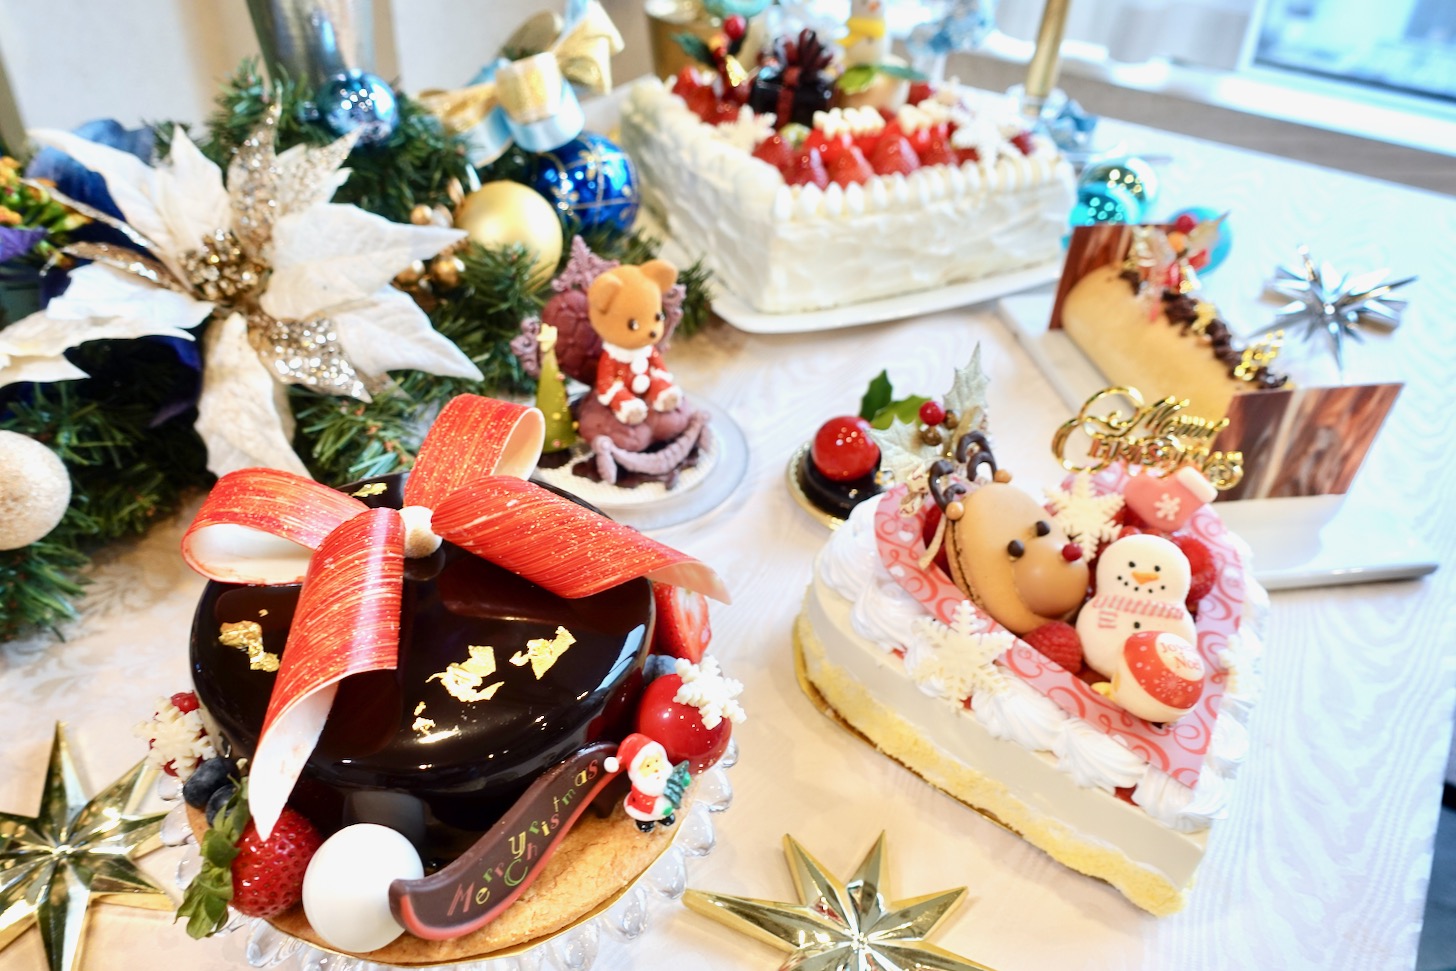 ロイヤルパークホテルでクリスマススイーツコンテスト入賞作品が10月から予約開始 ストーリー性を感じるクリスマスケーキをレポ Locketsマガジン